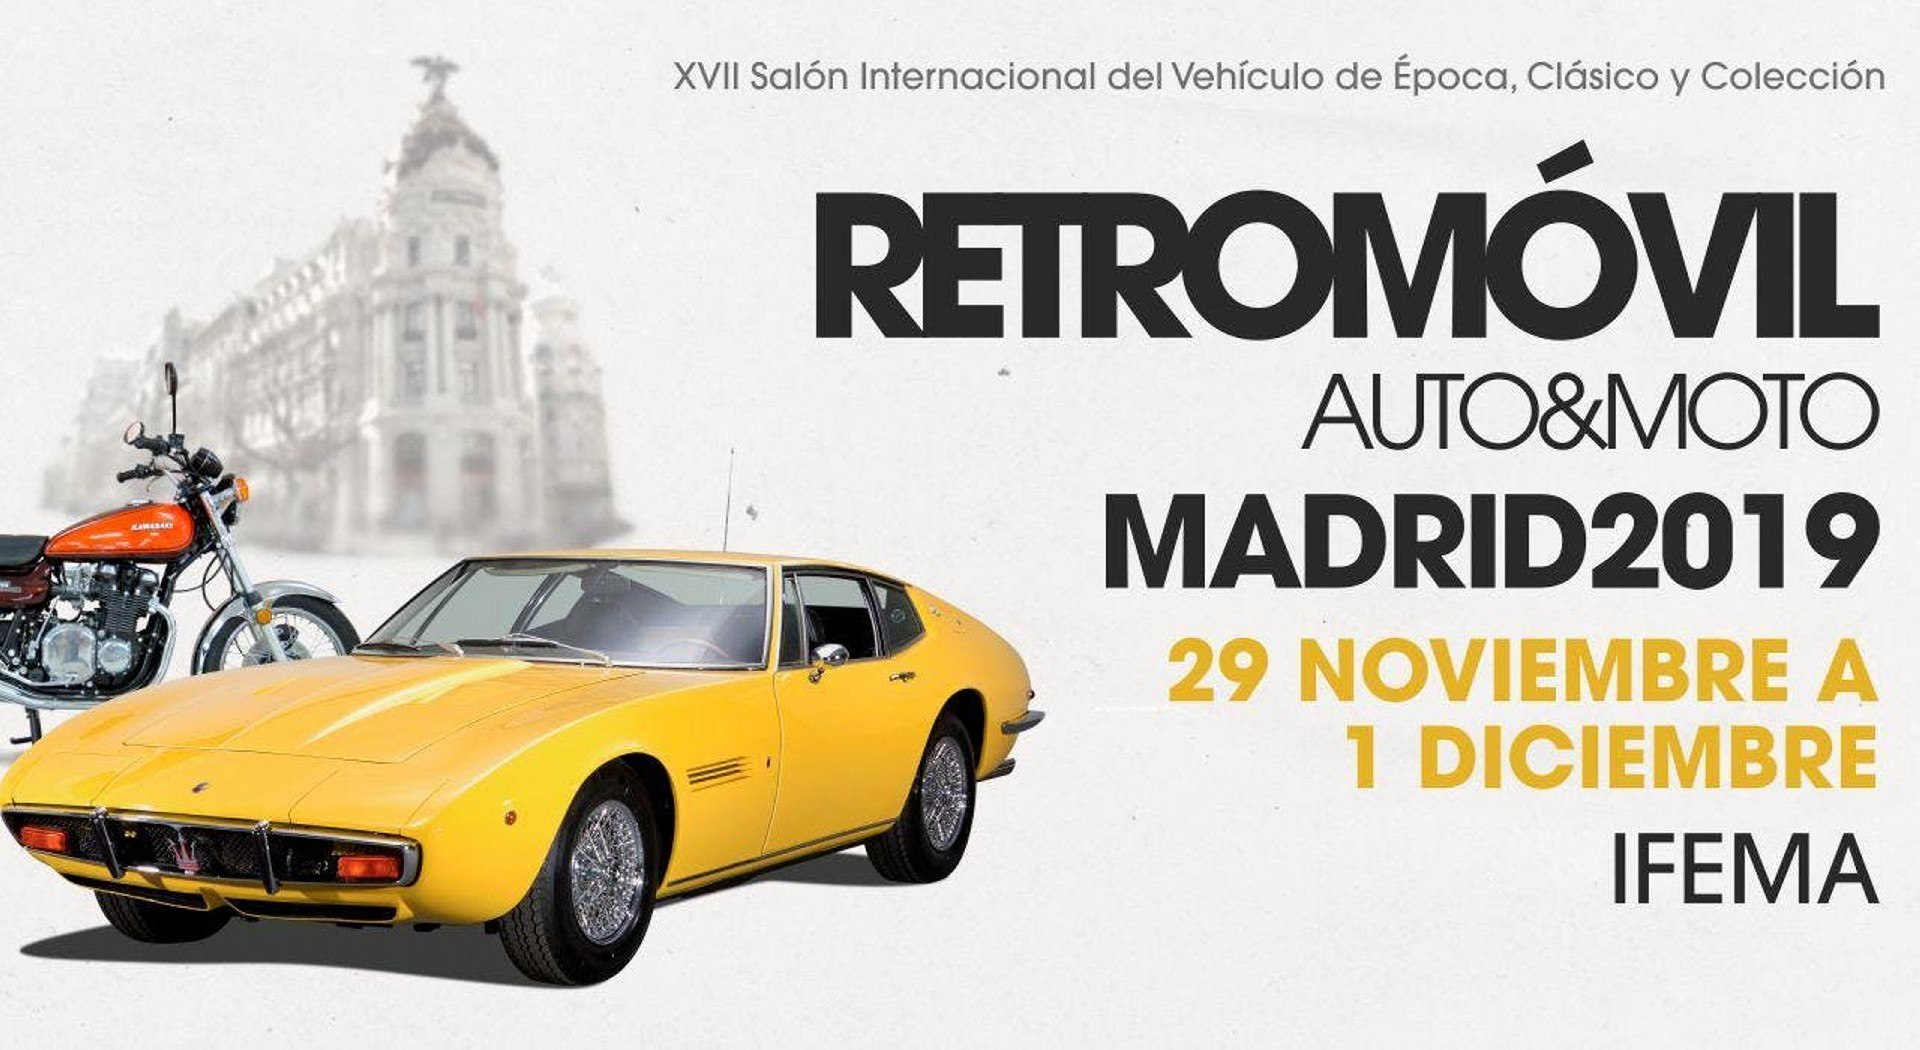 Retromóvil Madrid 2019: XVII Salón Internacional del Vehículo de Época, Clásico y Colección